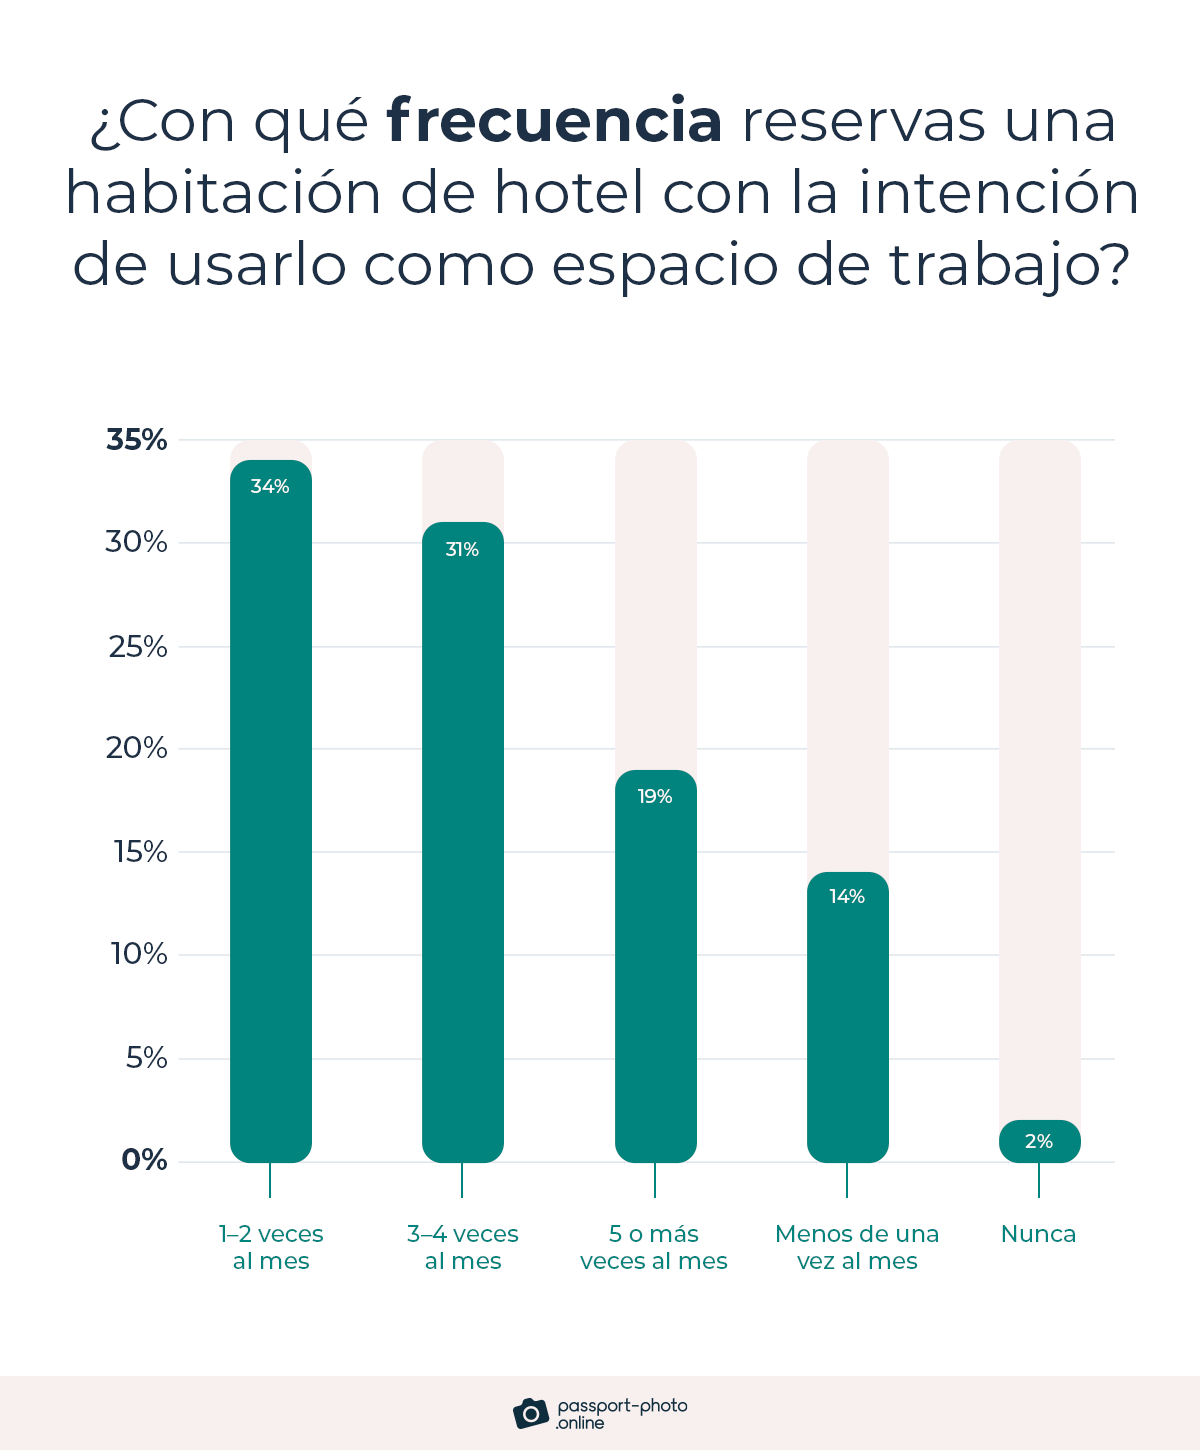 la mayoría de los profesionales (65%) reservan habitaciones de hotel para usar como espacio de trabajo 1–4 veces al mes